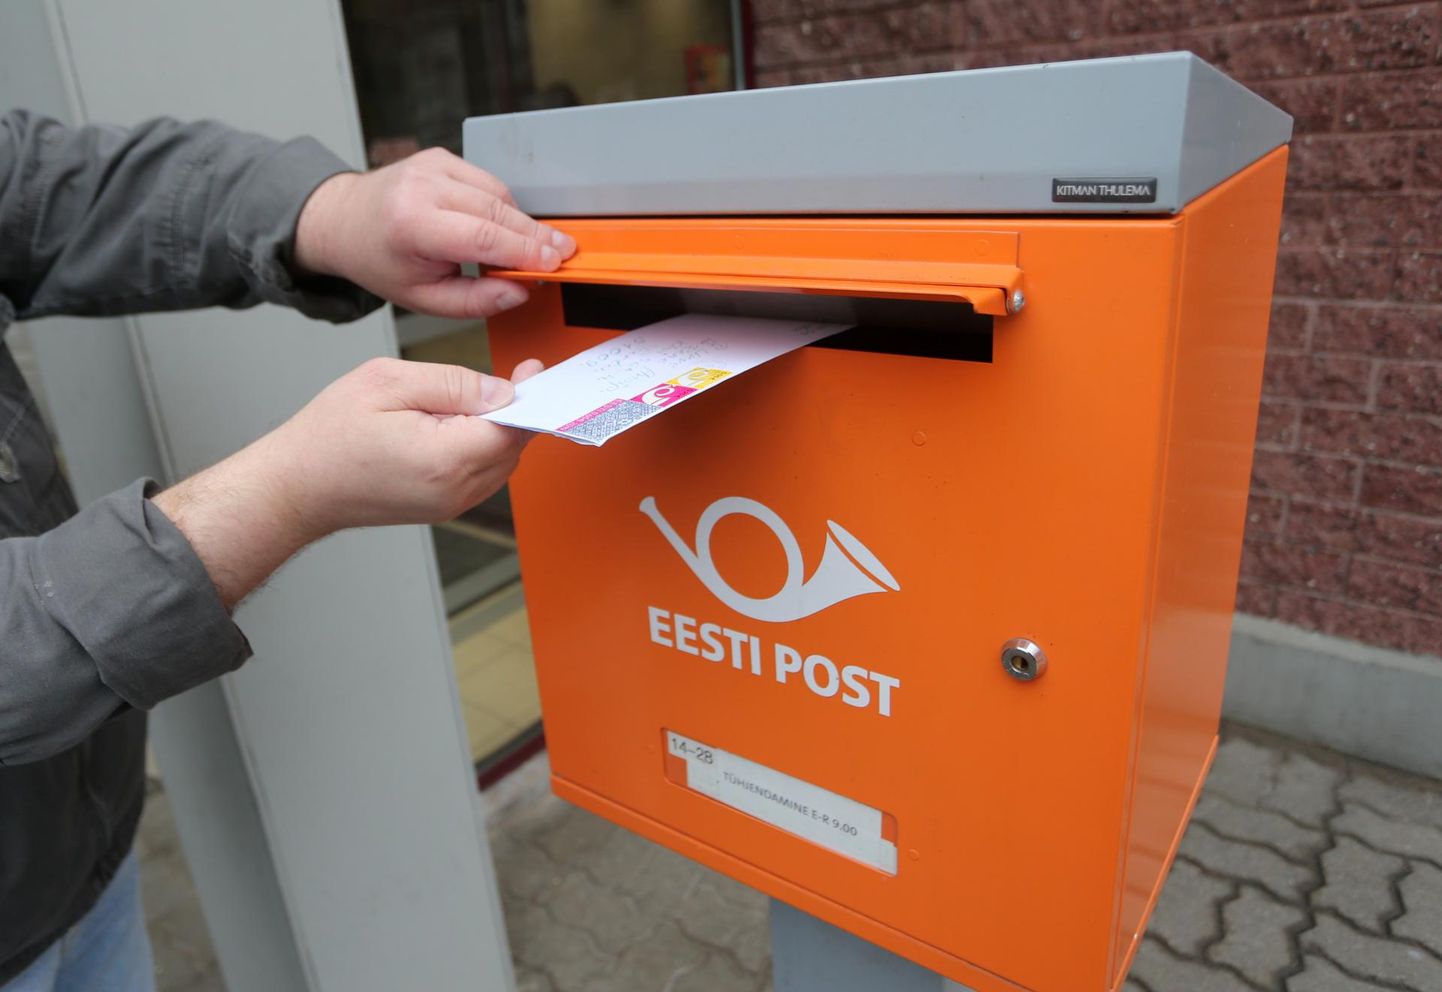 Käesolevast nädalast kehtib Omniva personaalse postiteenuse uus hinnakiri, mille kohaselt saavad kõik inimesed, kes elavad väljaspool suuremaid linnu, tellida endale postikulleri koju või töökohta tasuta.